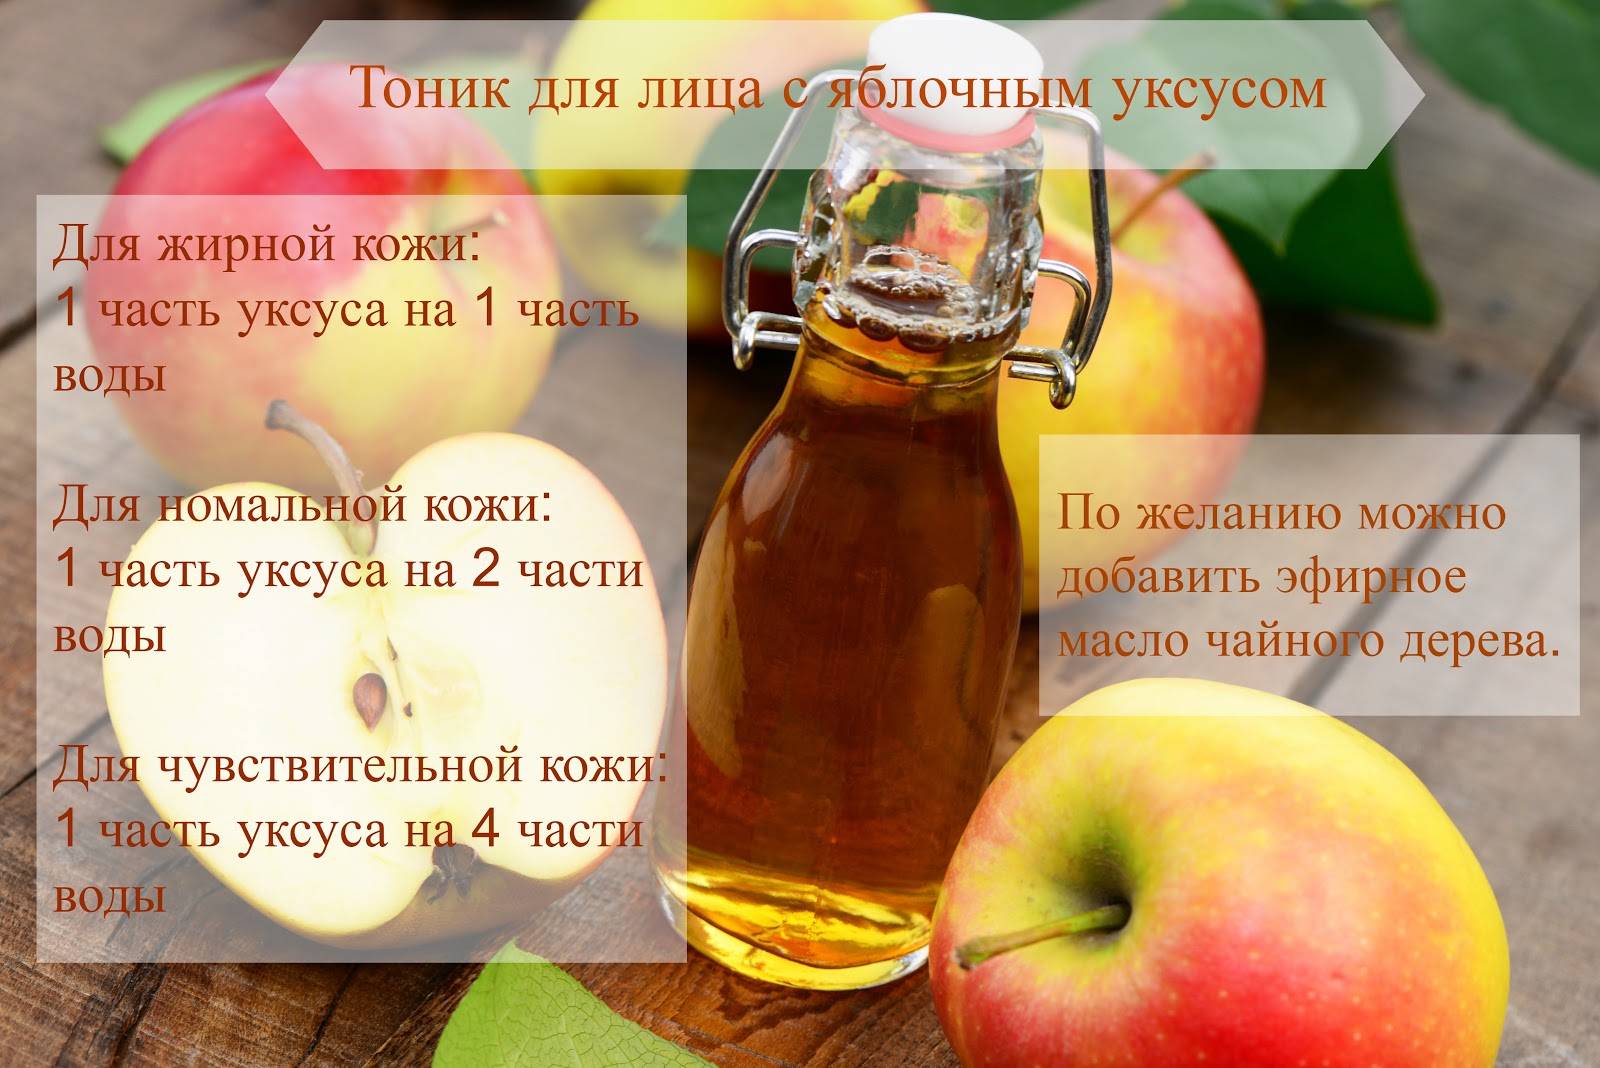 Яблочный уксус для похудения: как пить, отзывы диетологов, польза и противопоказания